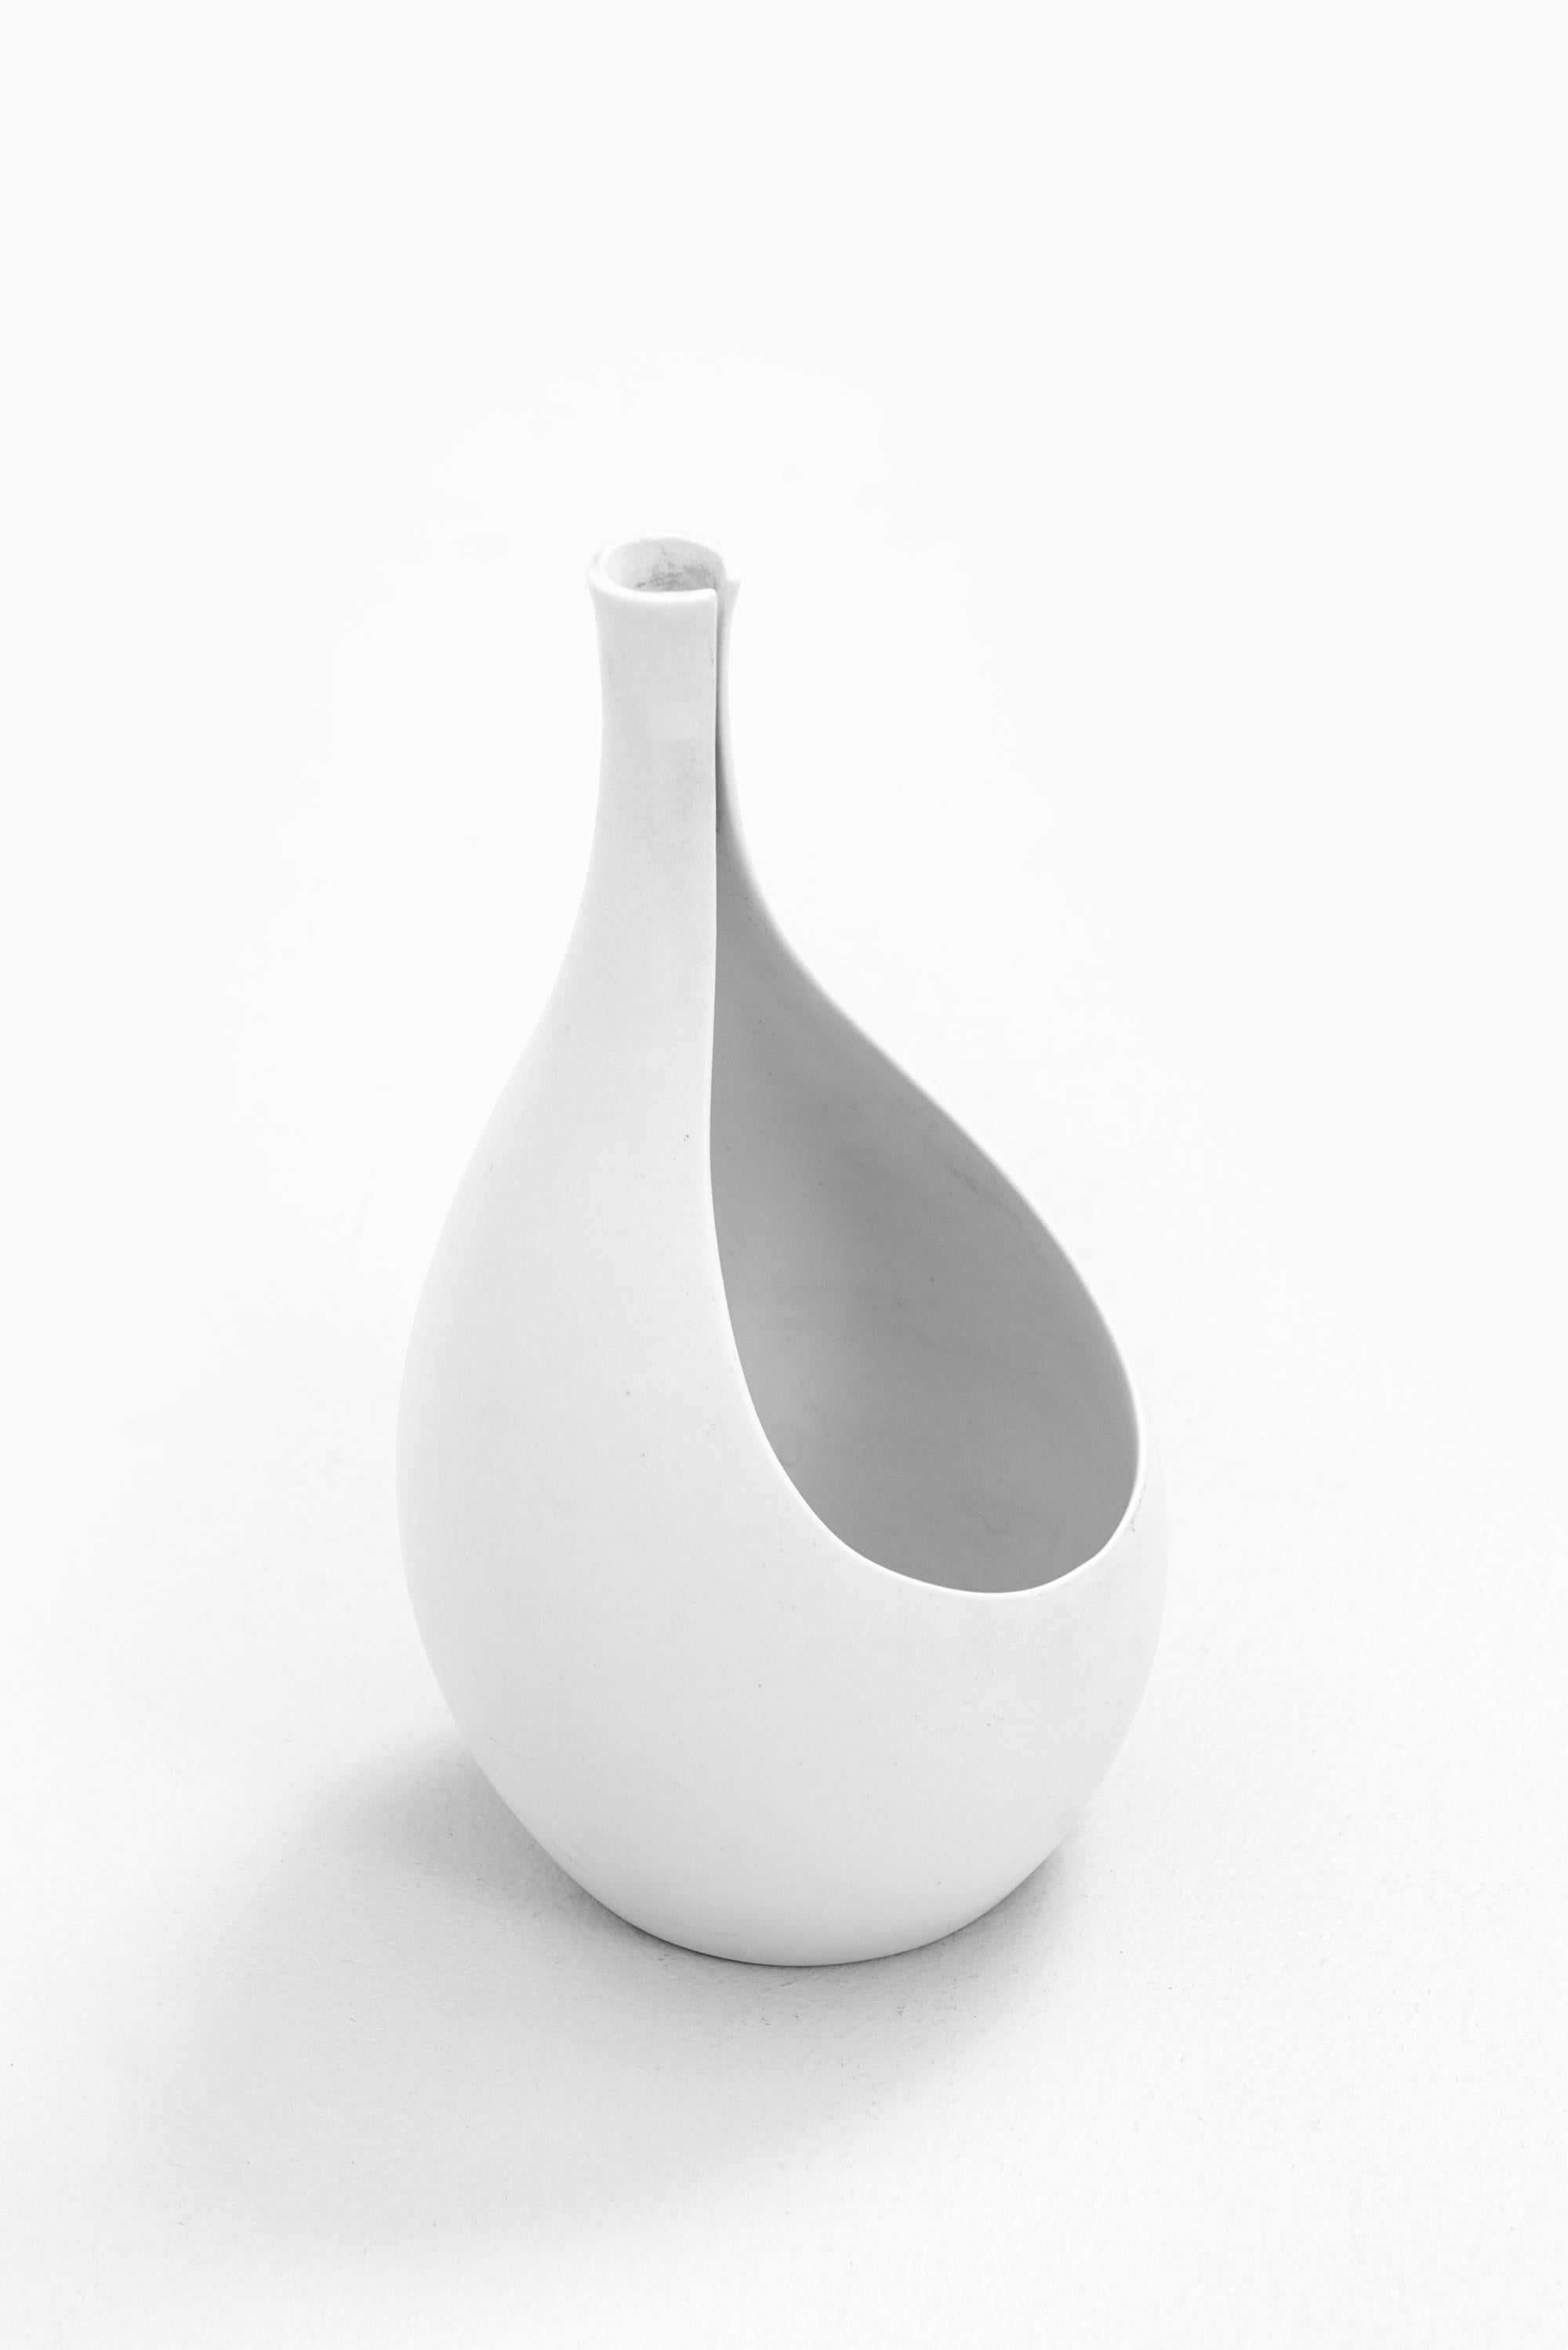 Swedish Stig Lindberg Ceramic Vase Model Pungo by Gustavsberg in Sweden For Sale